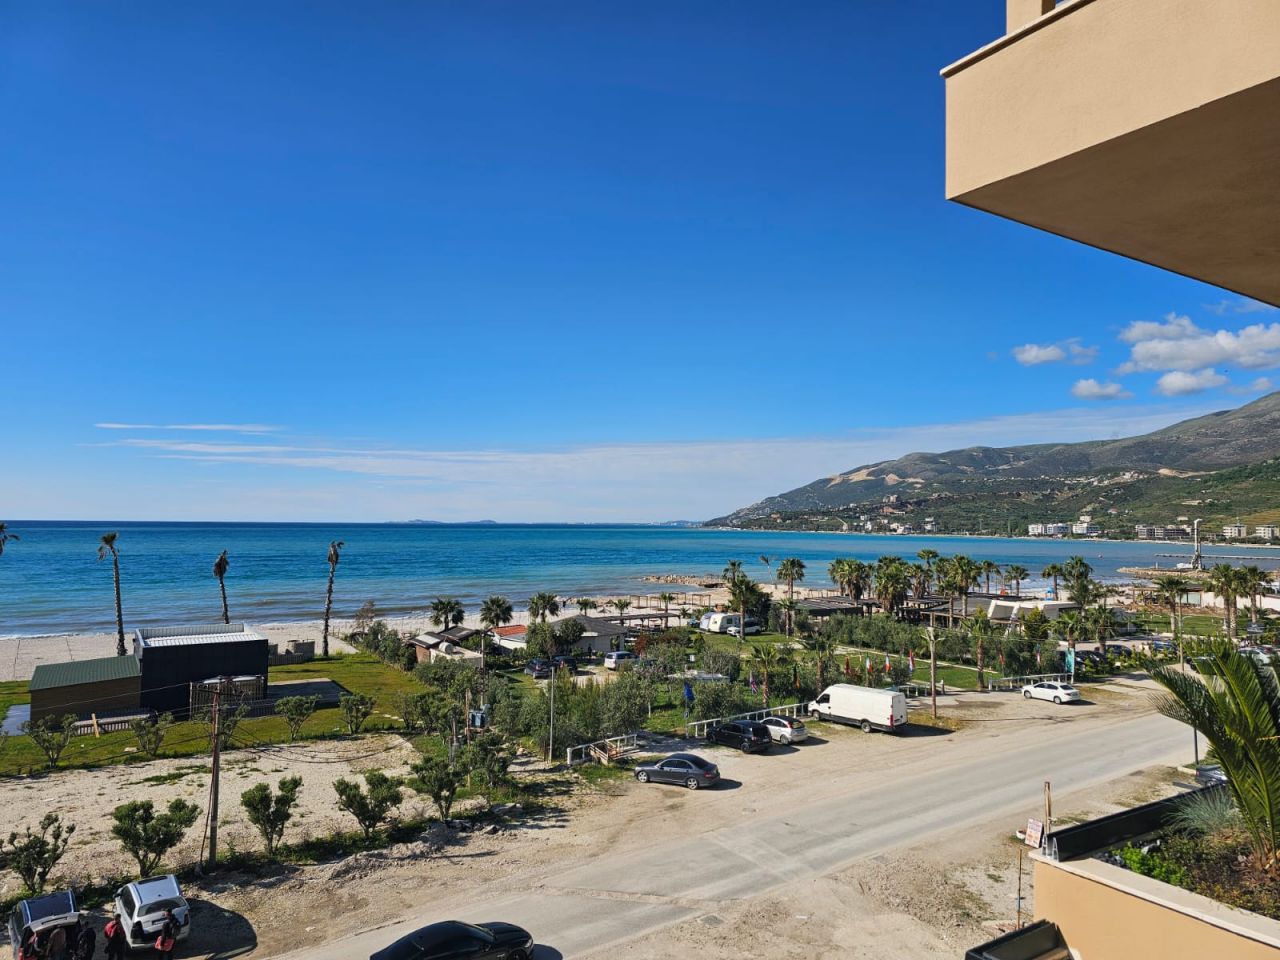 Wohnung Zum Verkauf In Vlora Albanien, In Einer Panoramagegend, Nahe Dem Strand